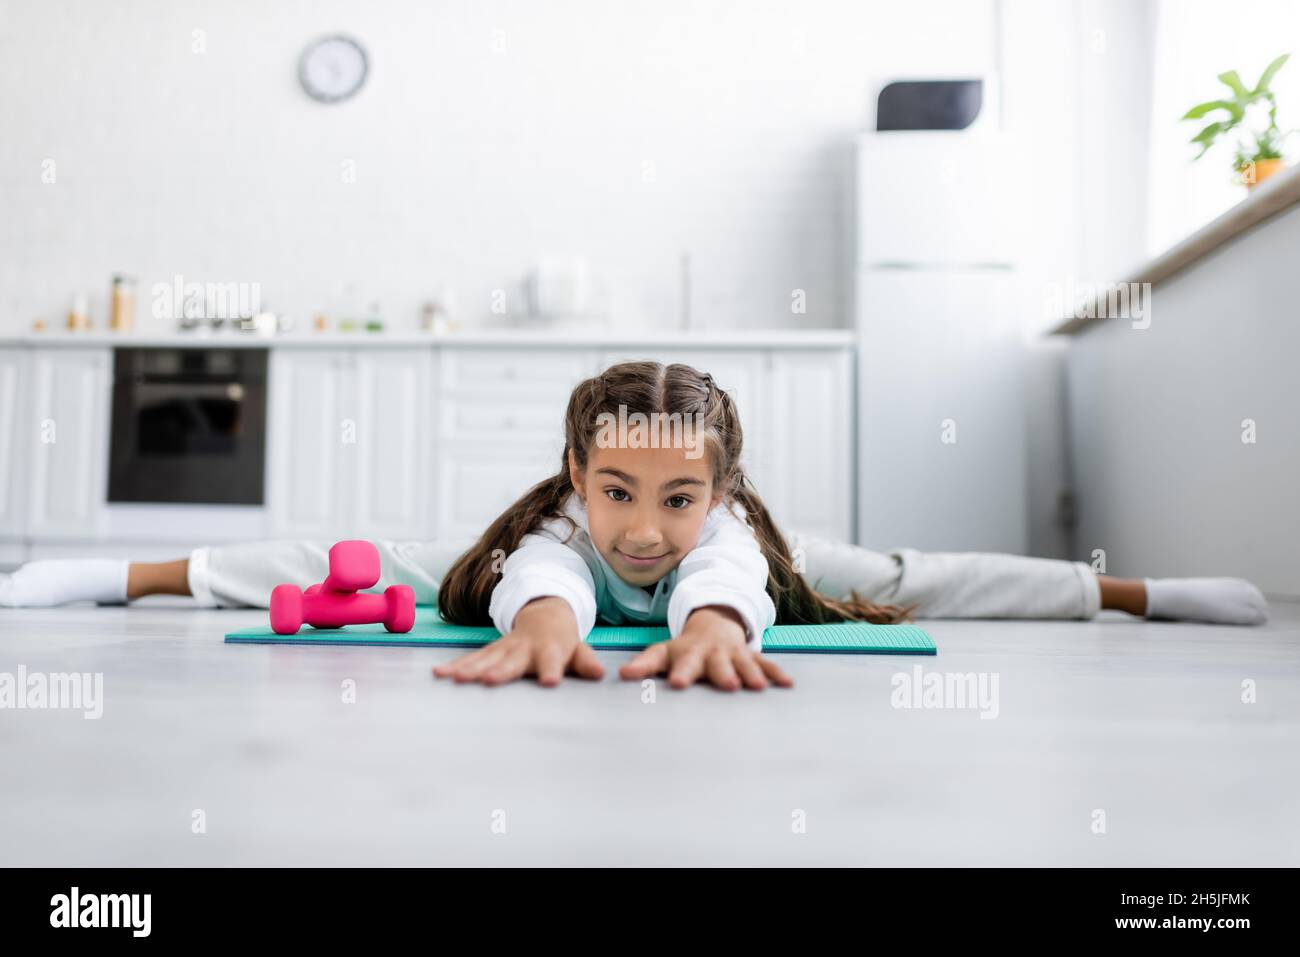 Oberflächenhöhe des Kindes, das die Kamera anschaut, während es in der Nähe von Kurzhanteln in der Küche gespalten wird Stockfoto